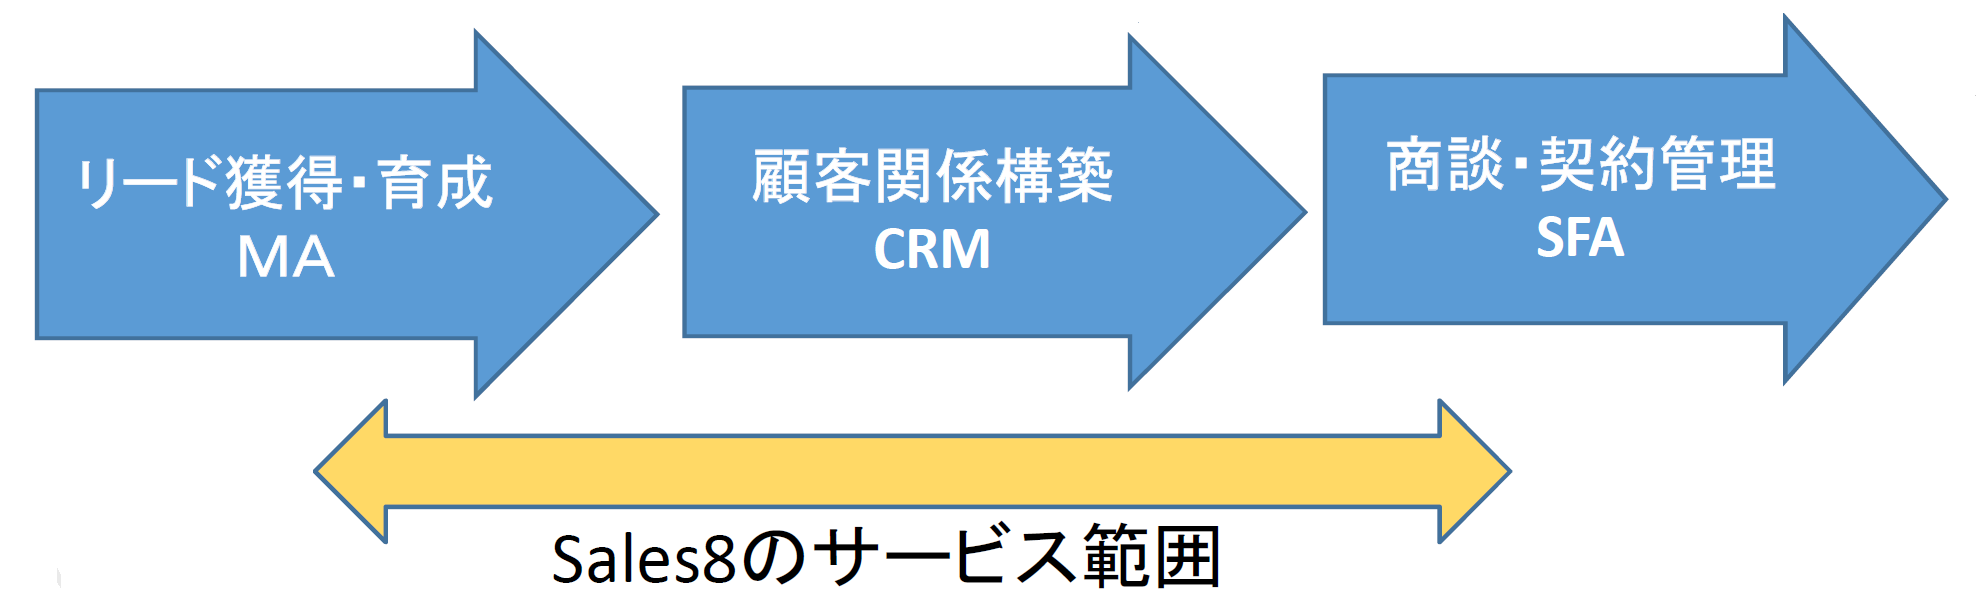 「Sales8」はCRMを中心にMAとSFAを含む機能